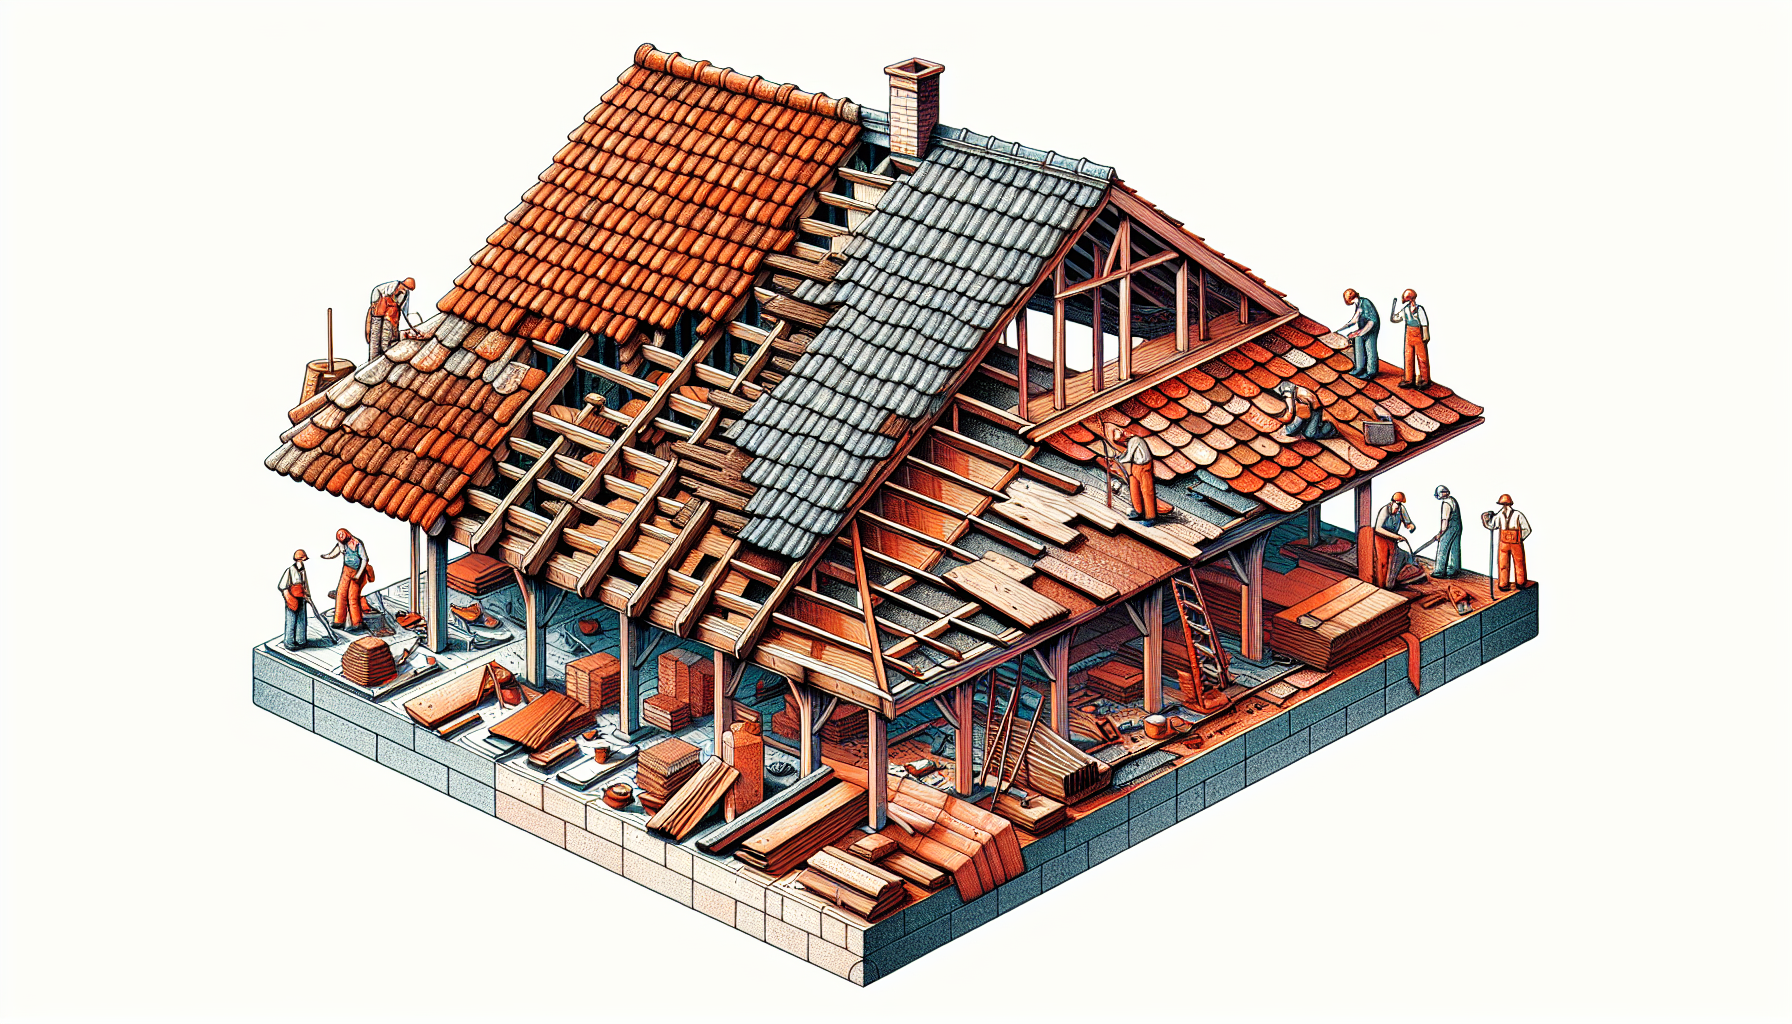 Dachsanierung Kosten: Kostenfaktoren einer Dachsanierung